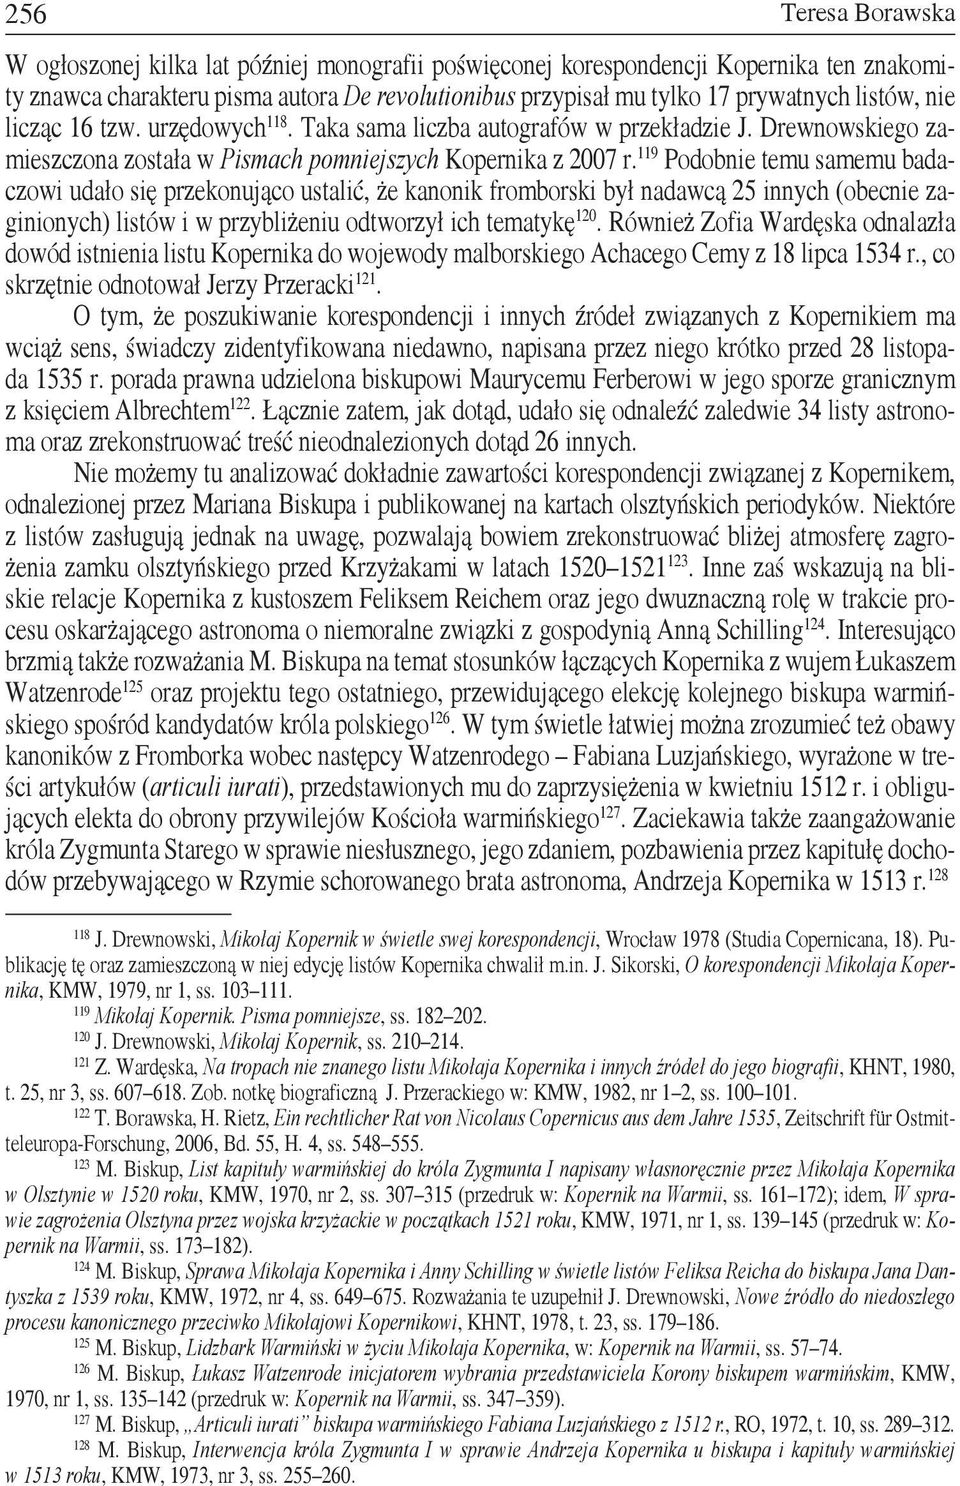 119 Podobnie temu samemu badaczowi udało się przekonująco ustalić, że kanonik fromborski był nadawcą 25 innych (obecnie zaginionych) listów i w przybliżeniu odtworzył ich tematykę 120.